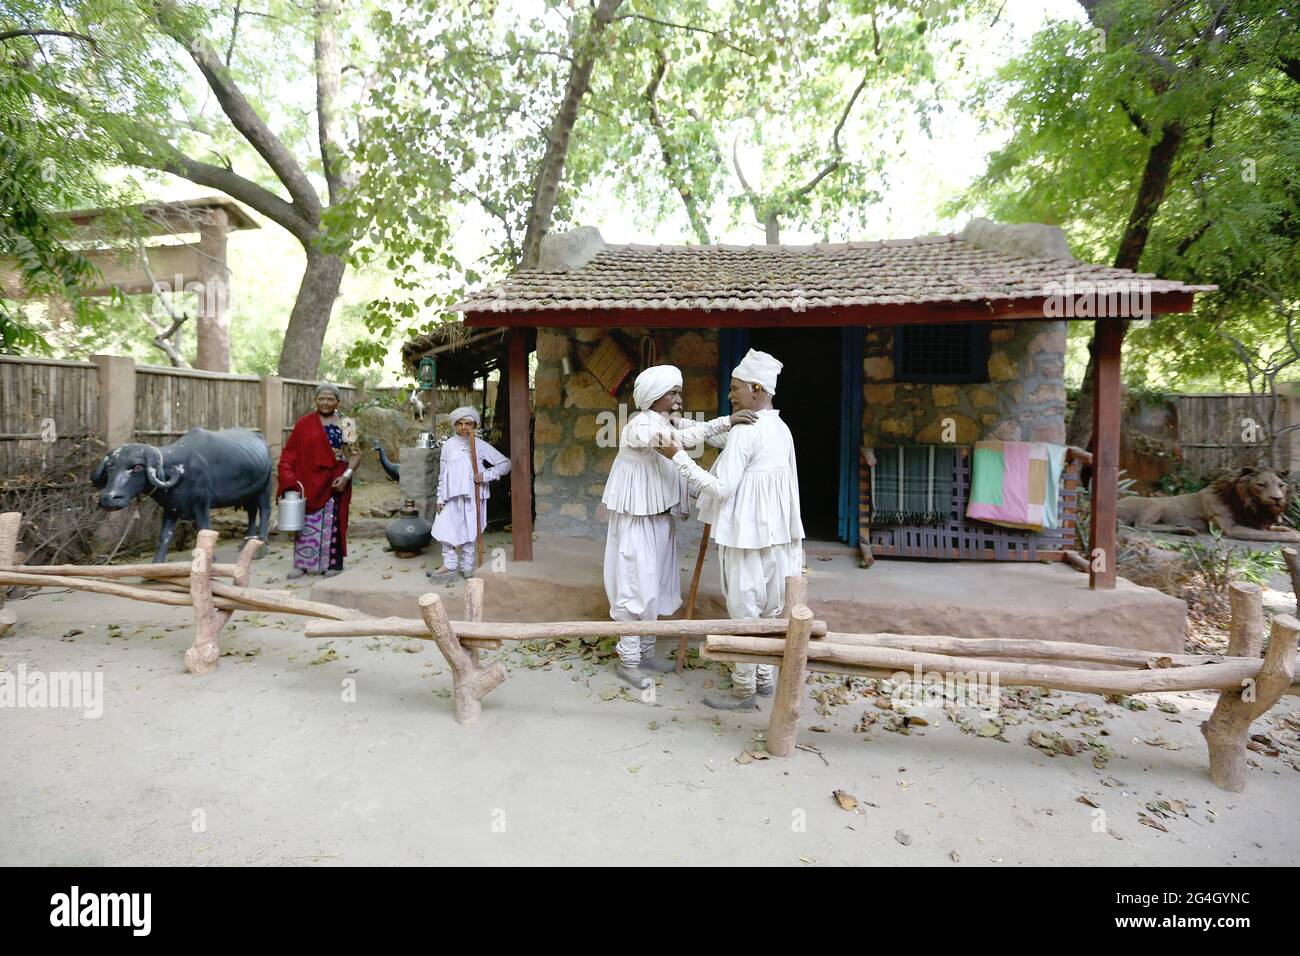 Ahmedabad Tribal Museum - mostra tradizionale di fango DELLA TRIBÙ RABARI che mostra il loro stile di vita tribale. Gujarat, India Foto Stock